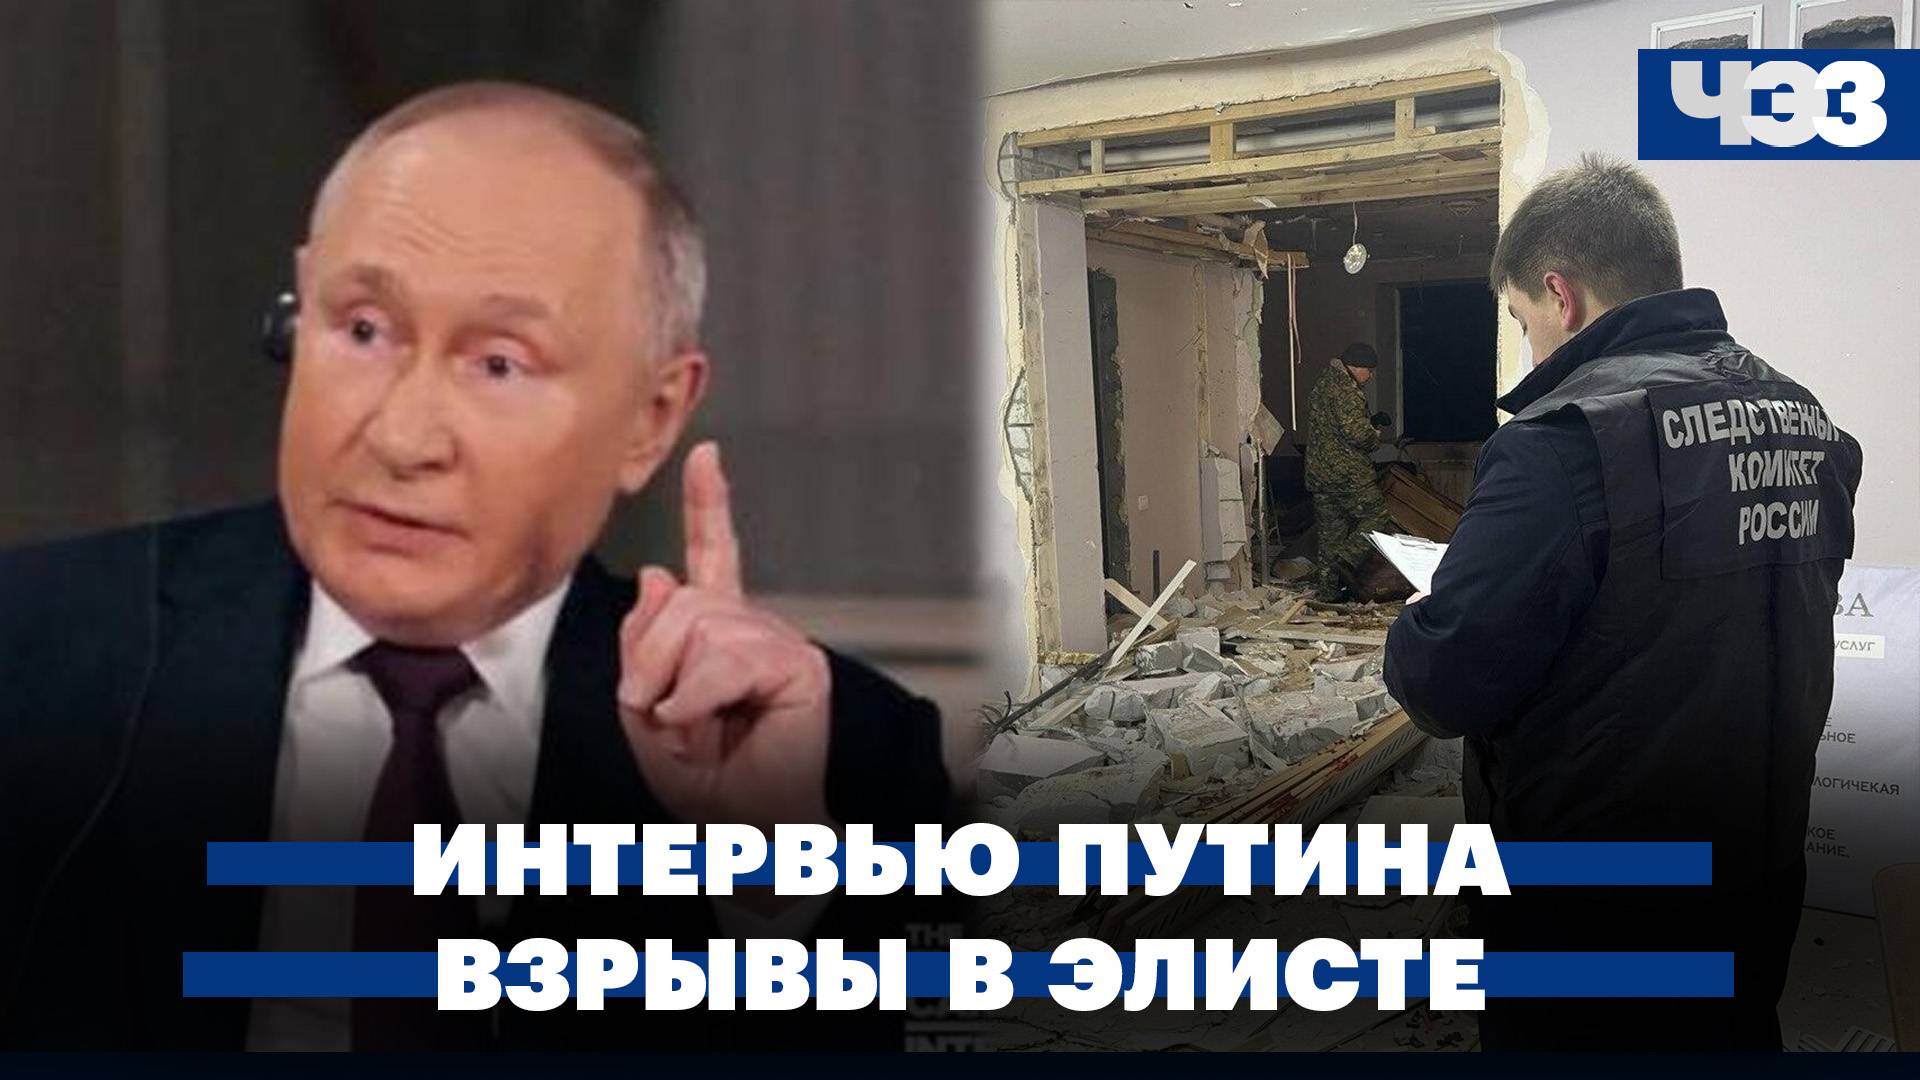 Реакция западных политиков на интервью Путина. Мужчина устроил два взрыва в Элисте